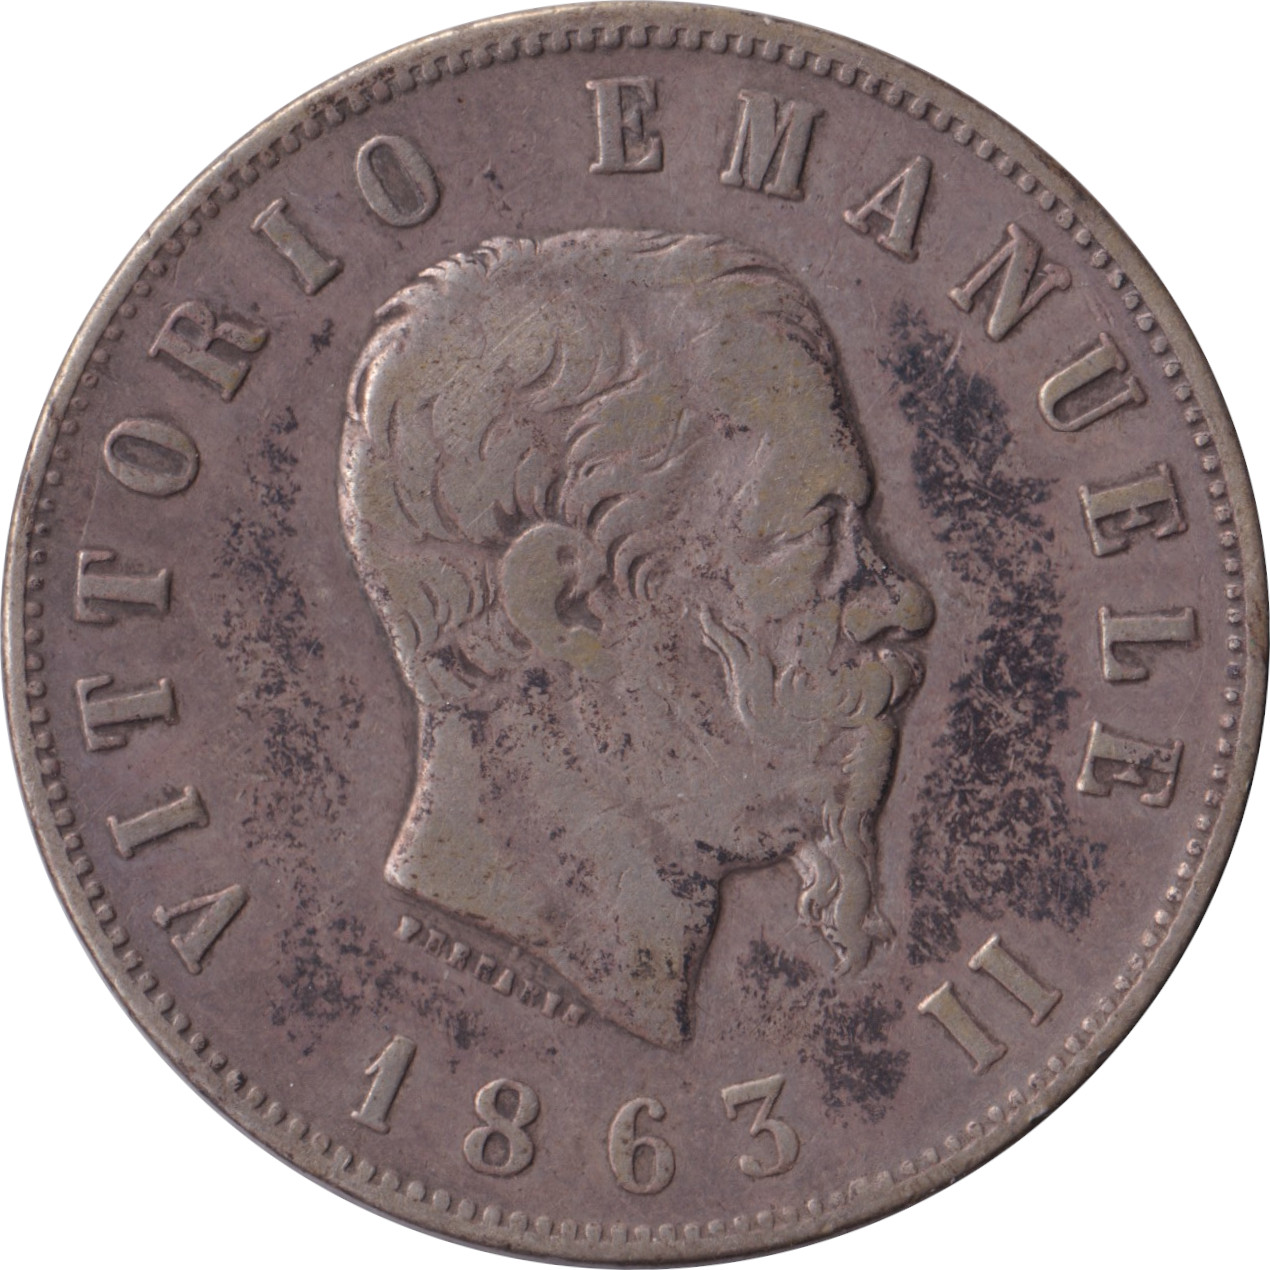 2 lire - Victor Emmanuel II - Shield